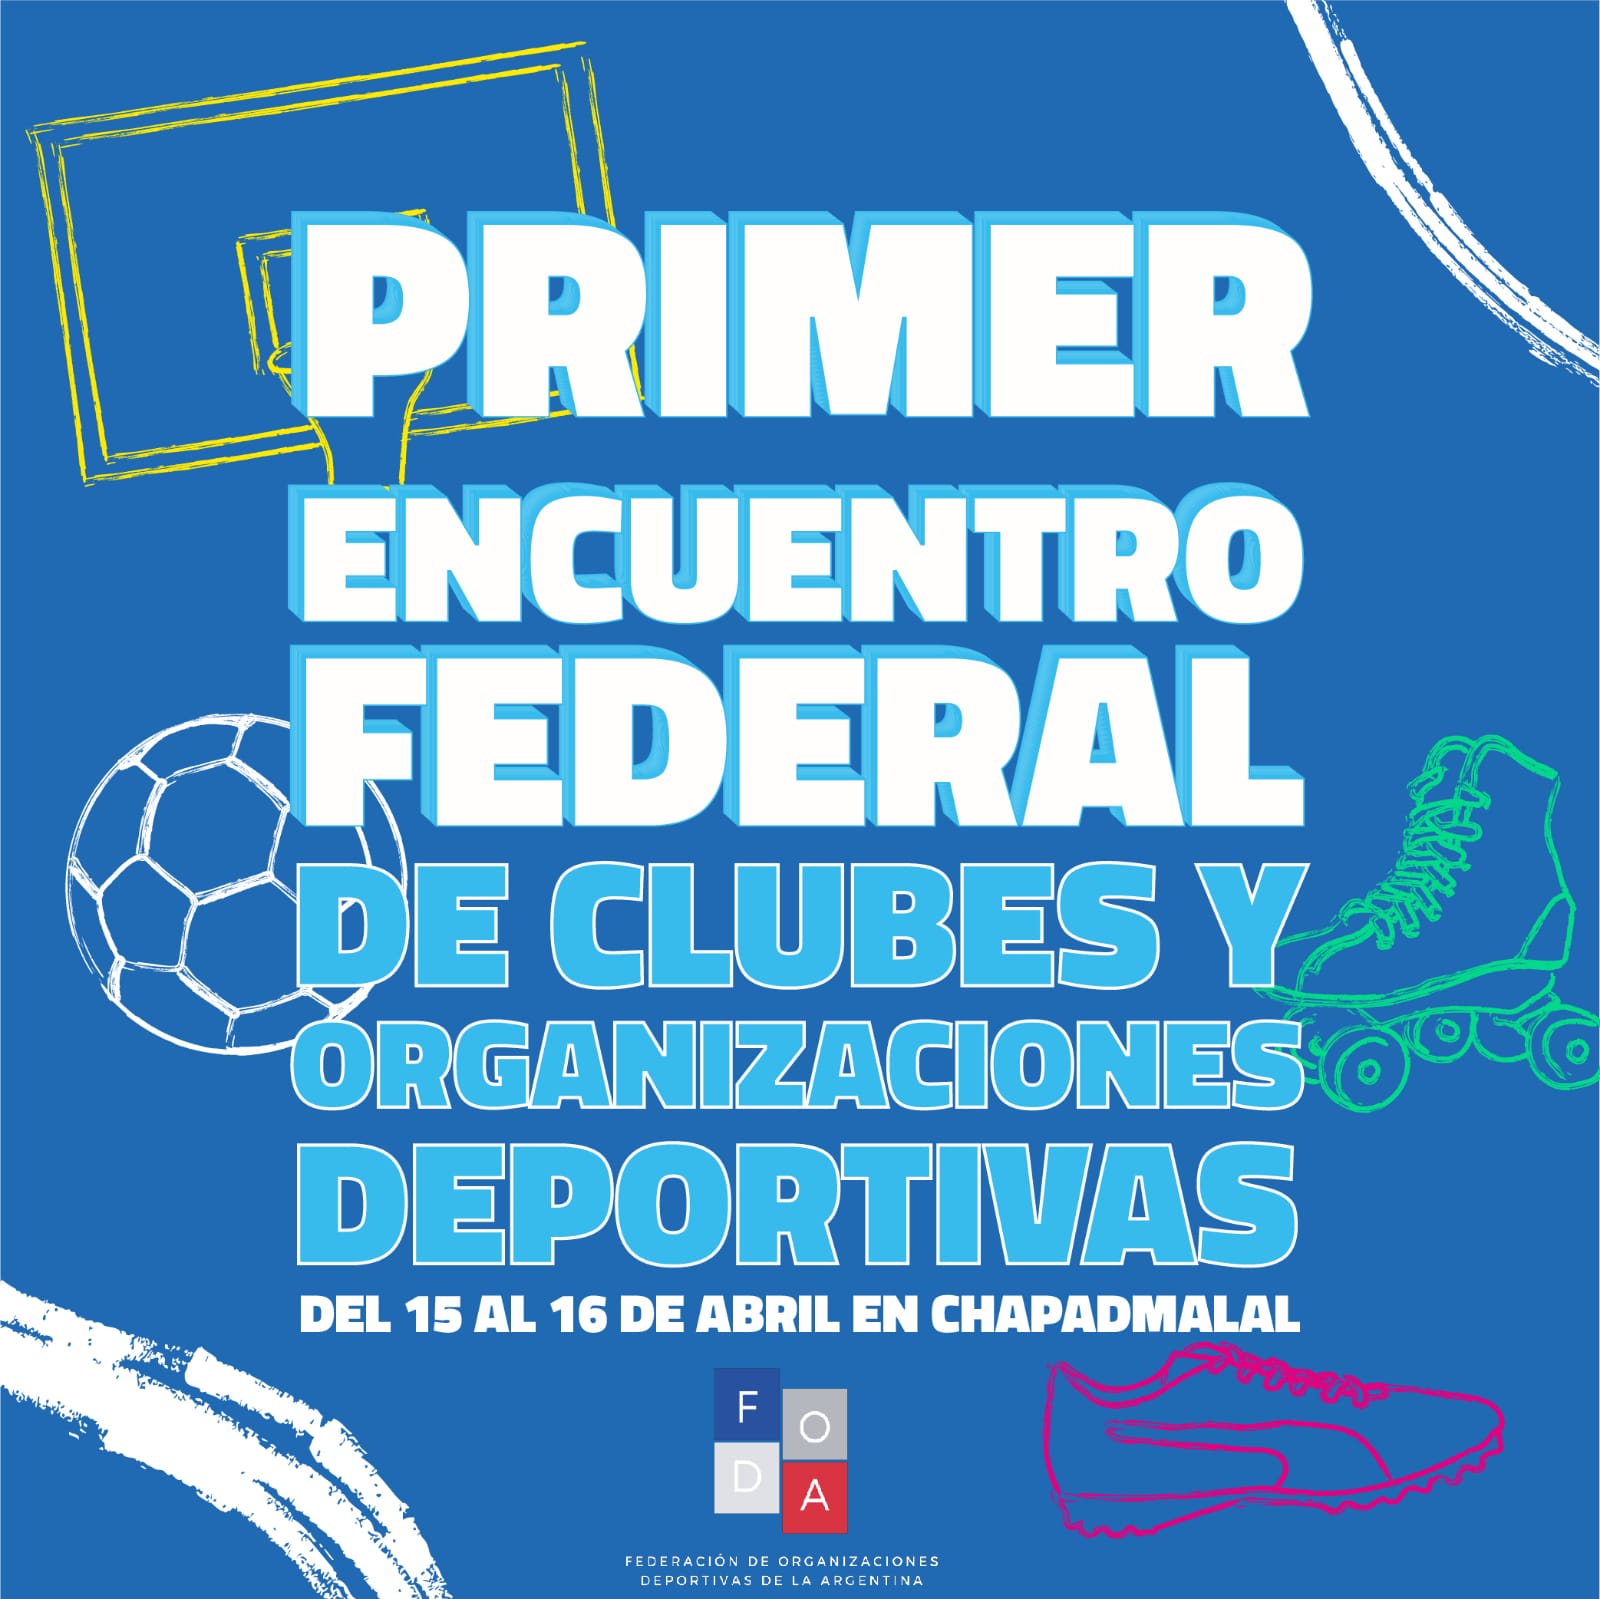 Se viene el 1er Encuentro Federal de Clubes de Barrio y Organizaciones Deportivas